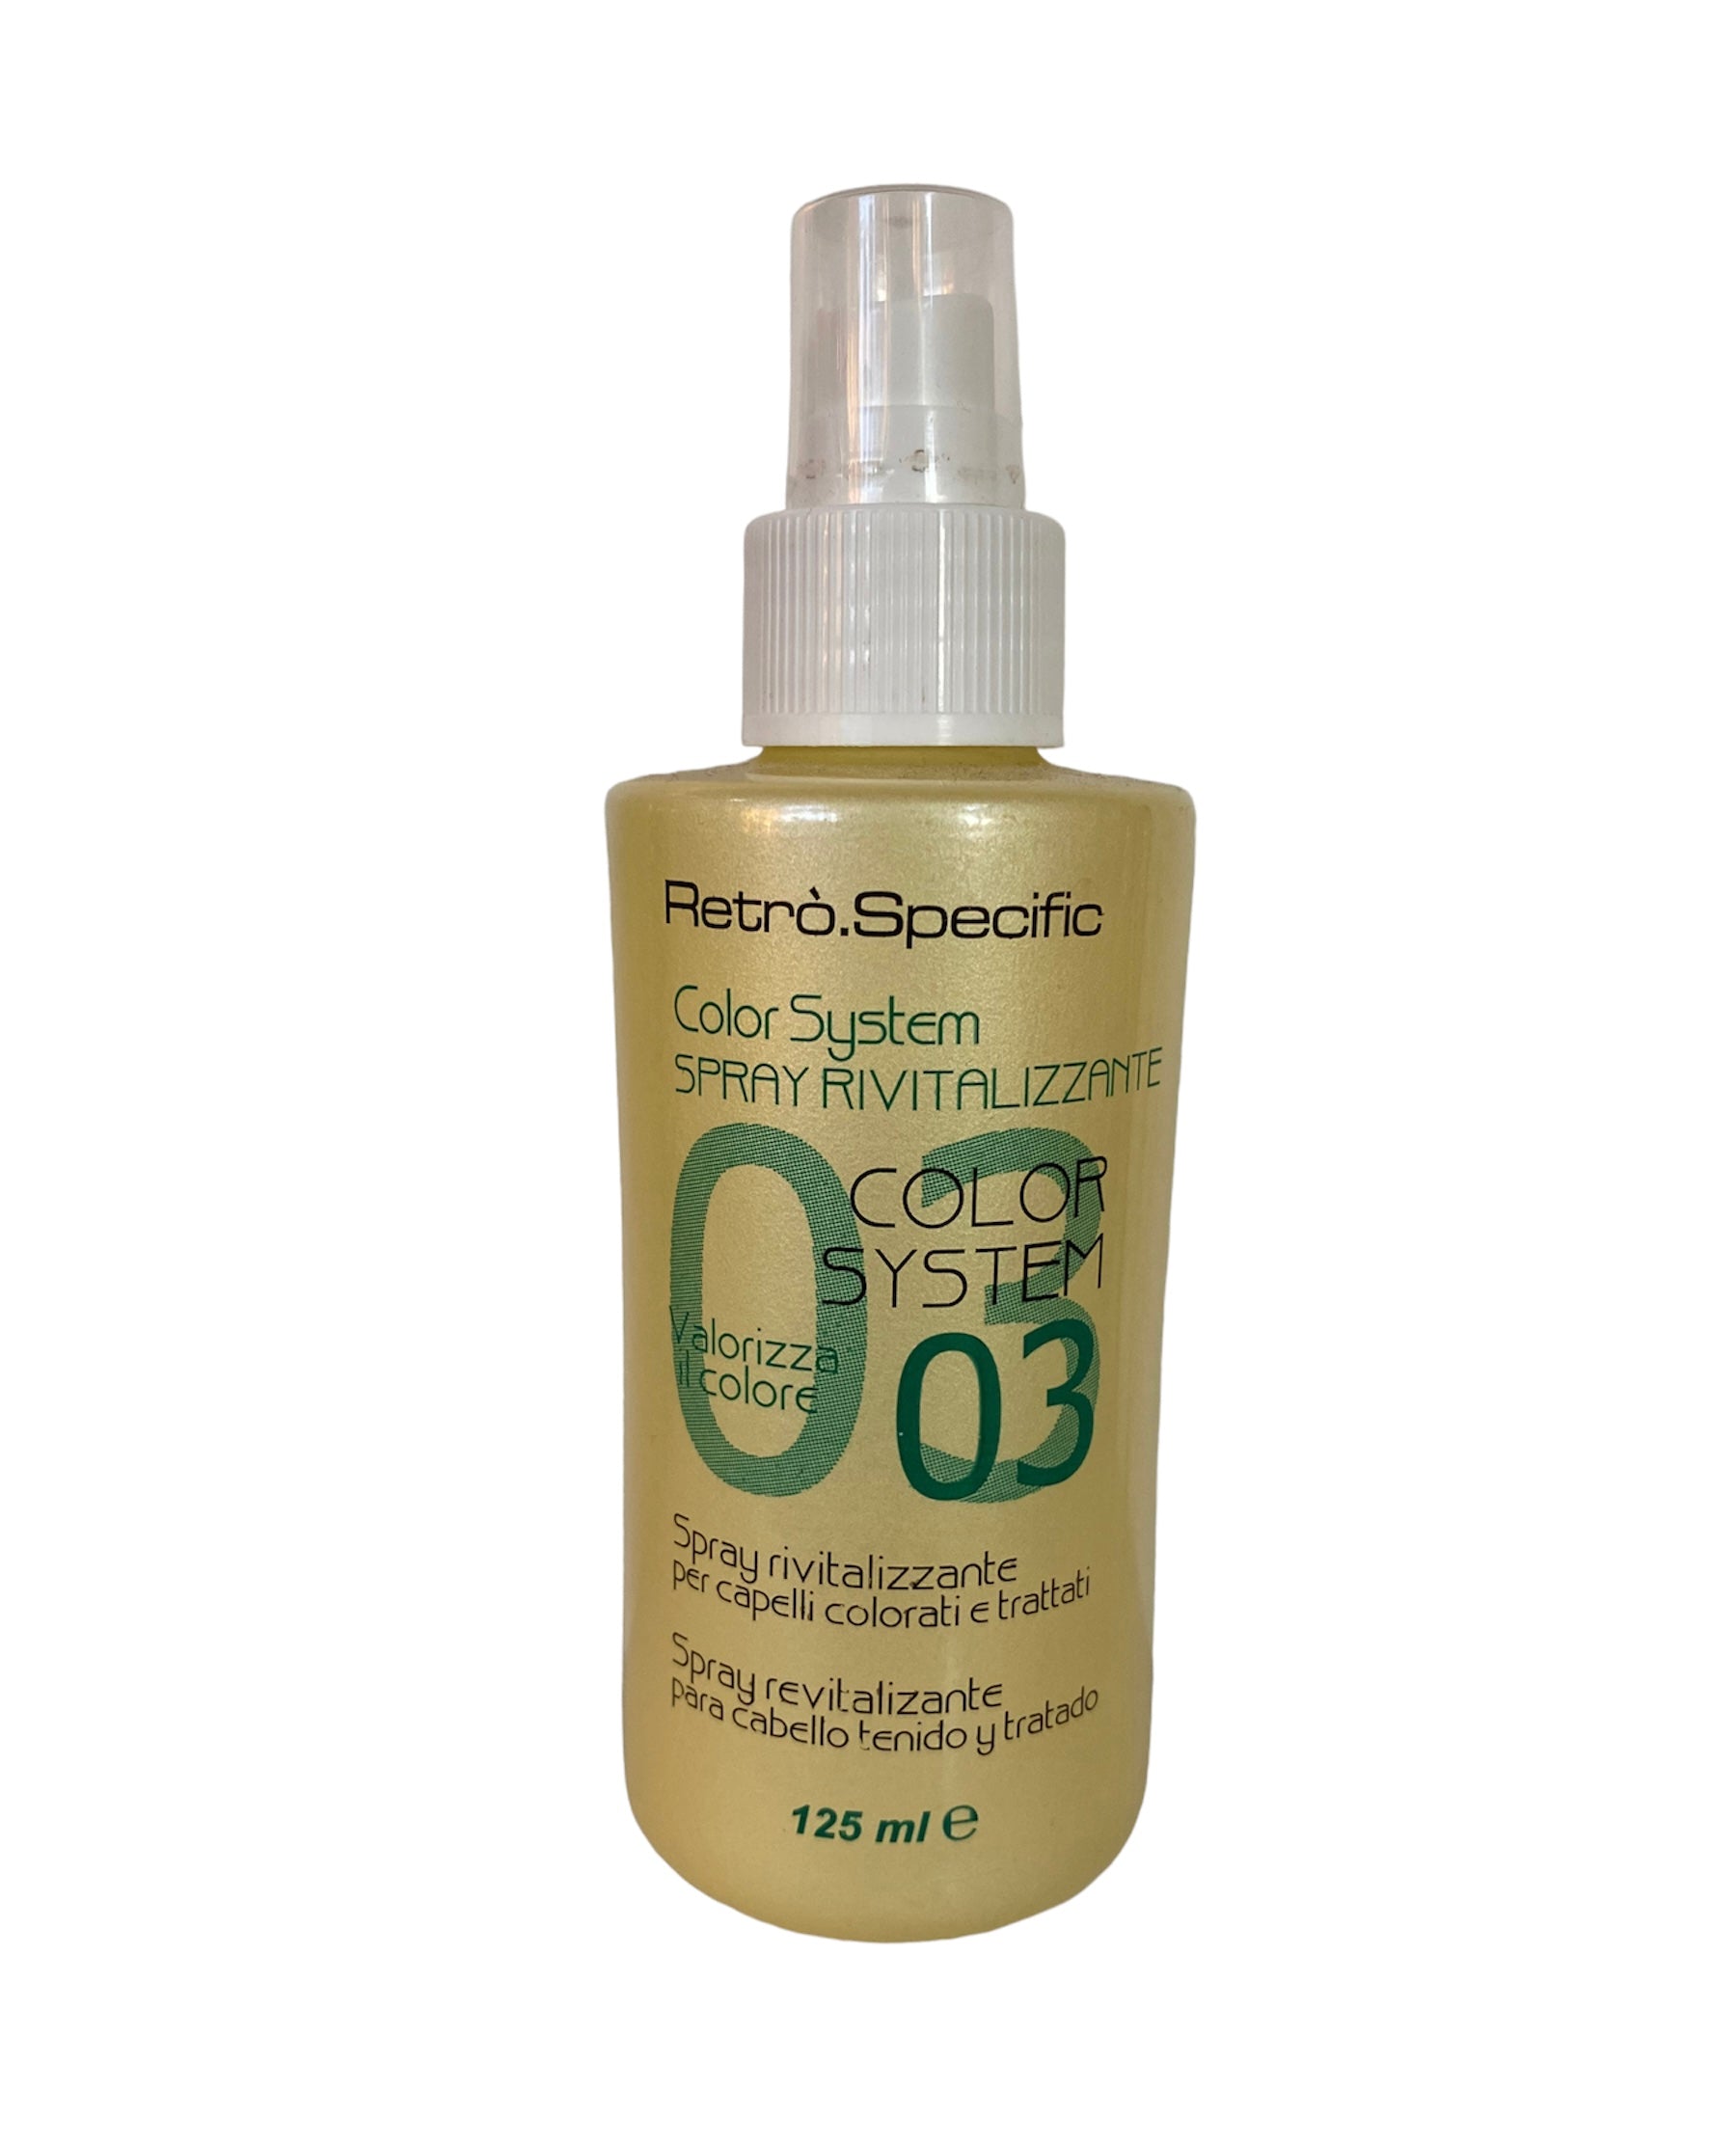 Oleo Spray - Olio secco per corpo e capelli rivitalizzante e protettivo.